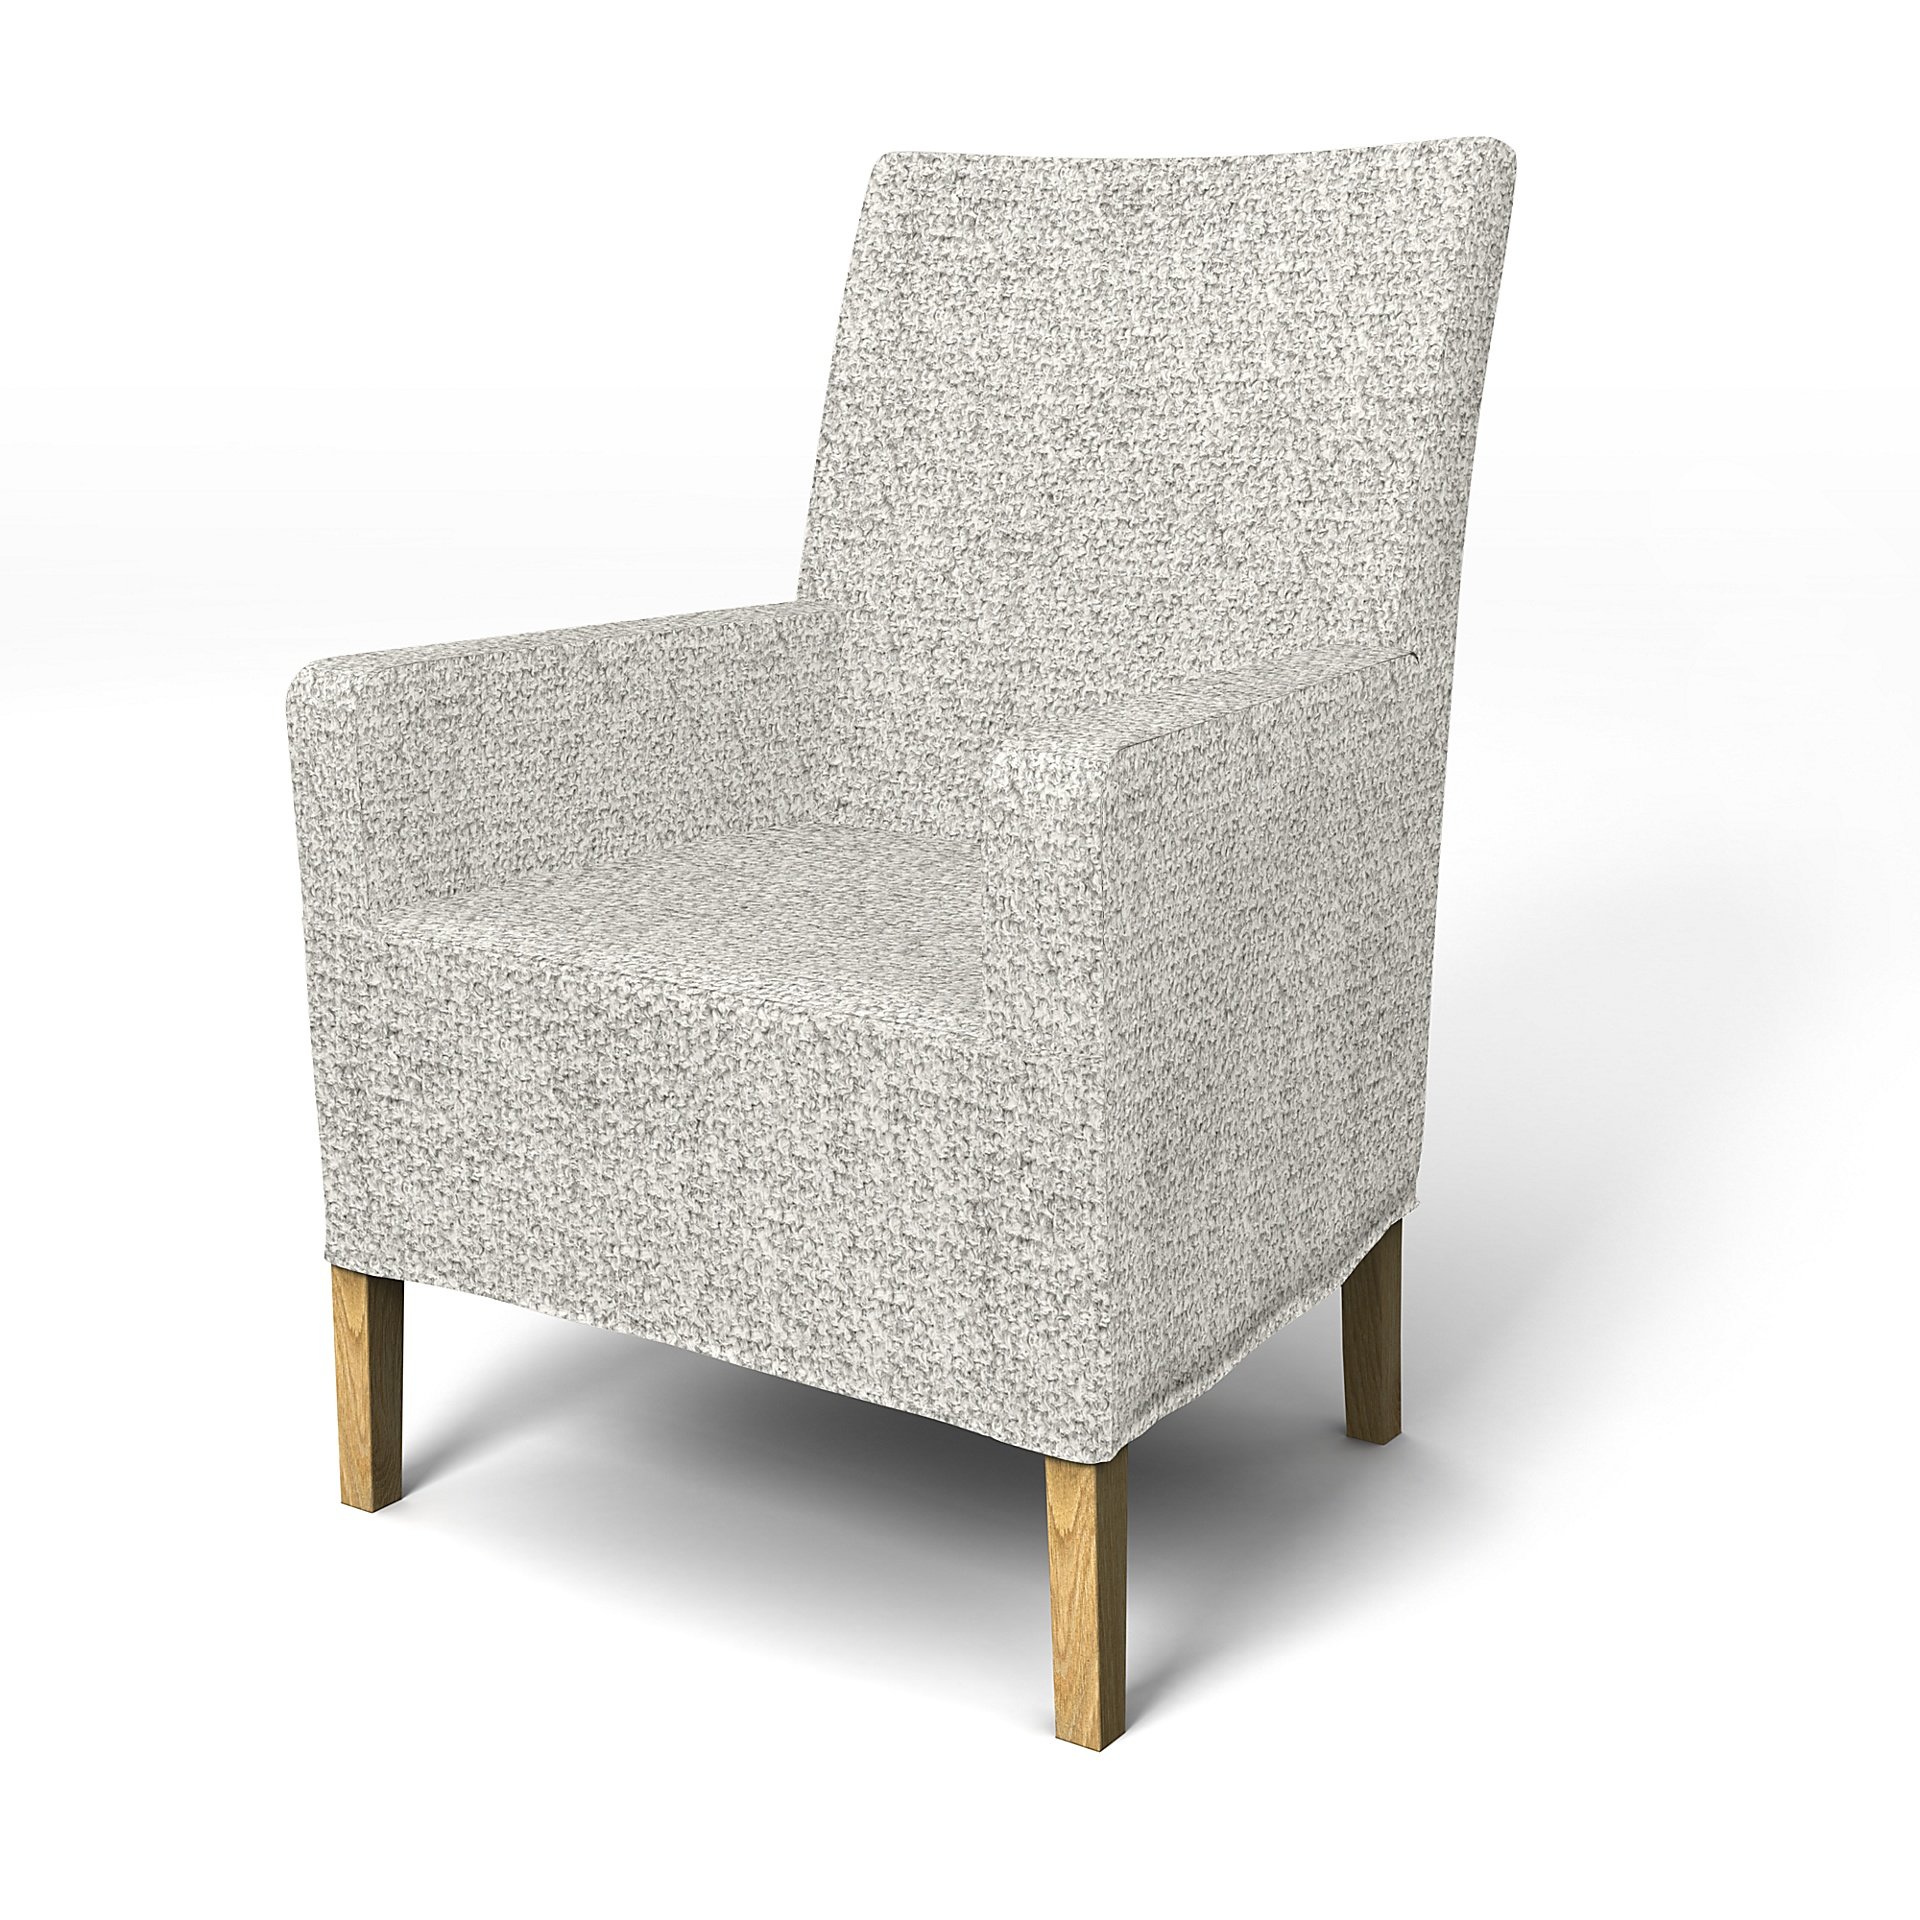 IKEA - Henriksdal, Chair cover w/ armrest, medium length skirt, Driftwood, Boucle & Texture - Bemz